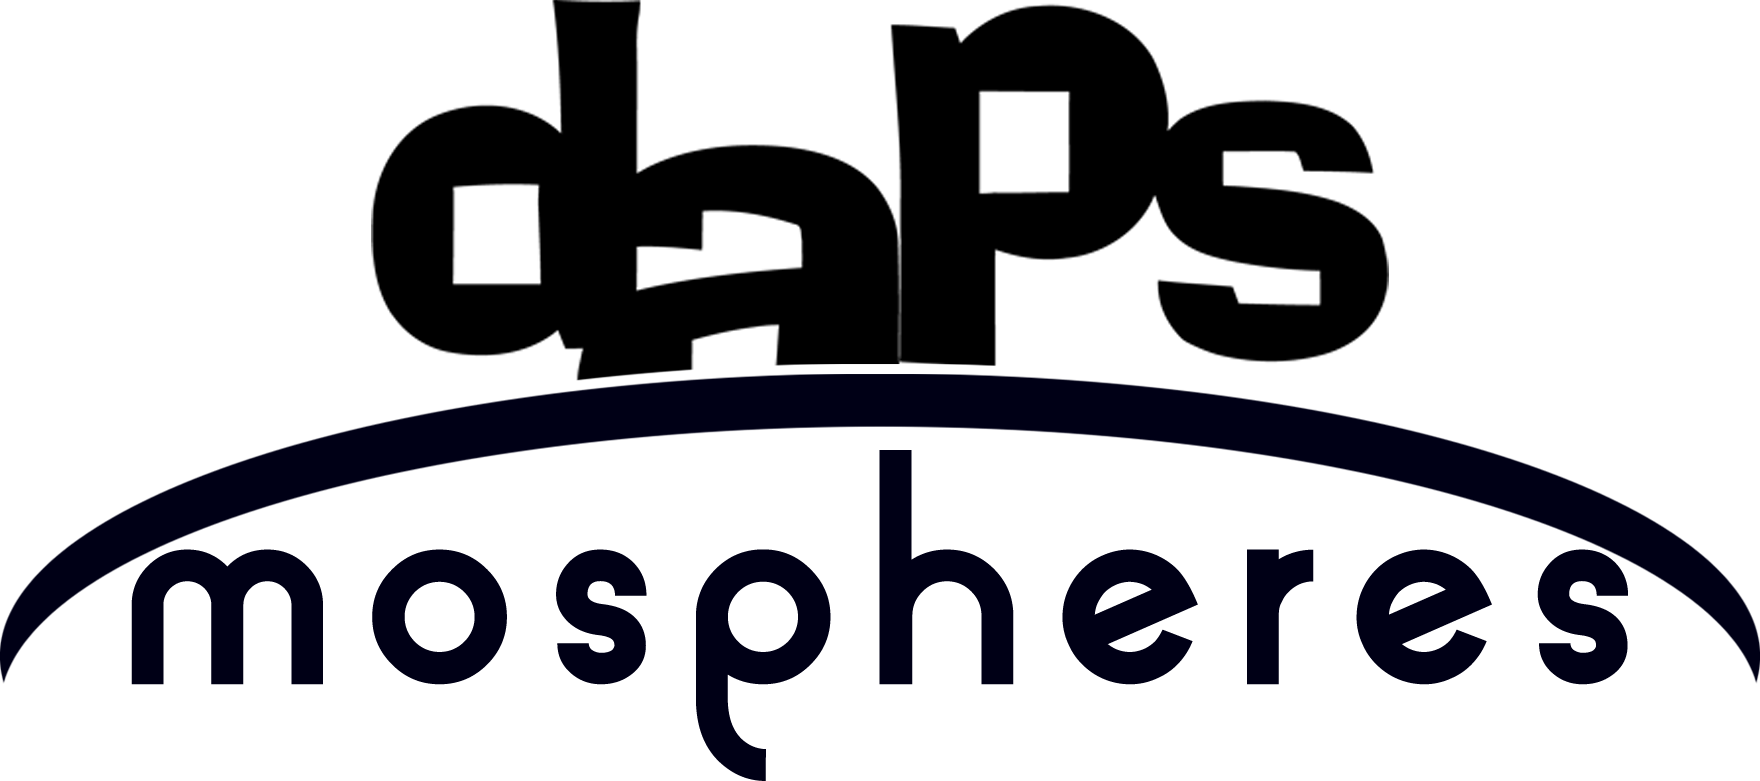 Presenting Dapsmospheres – Atmospheric Park Videos